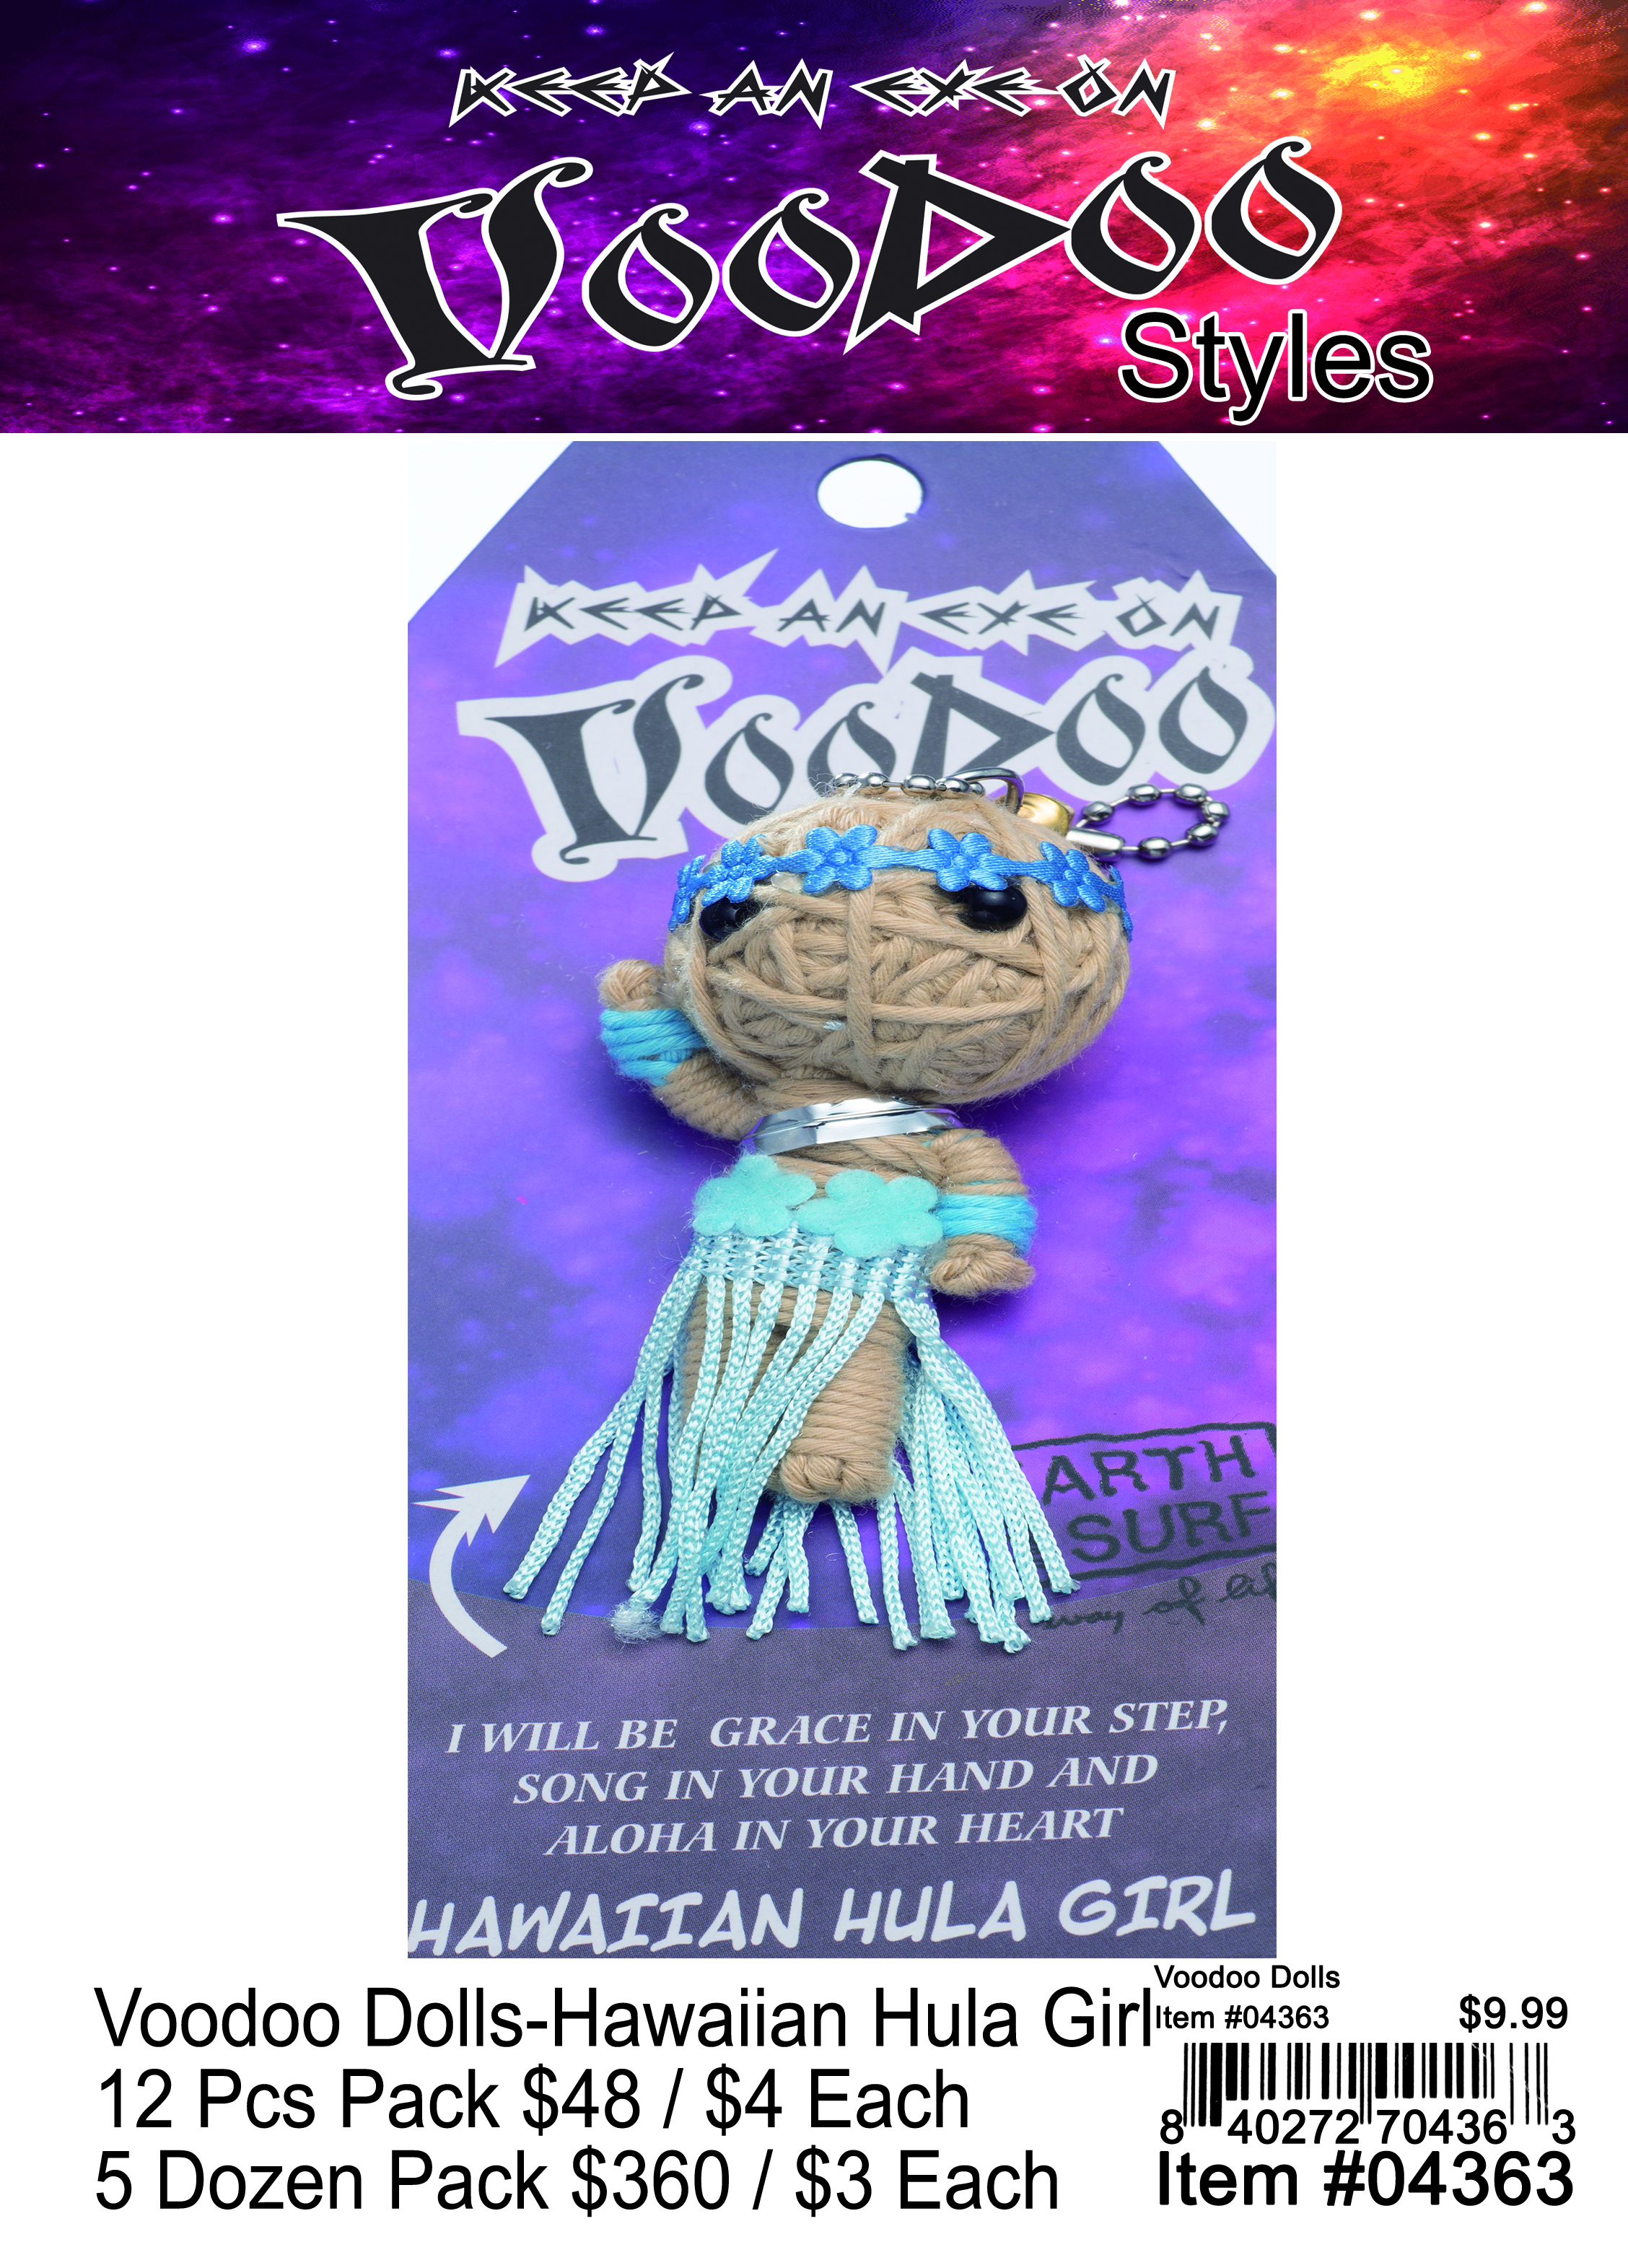 Voodoo Dolls-Hawaiian Hula Girl